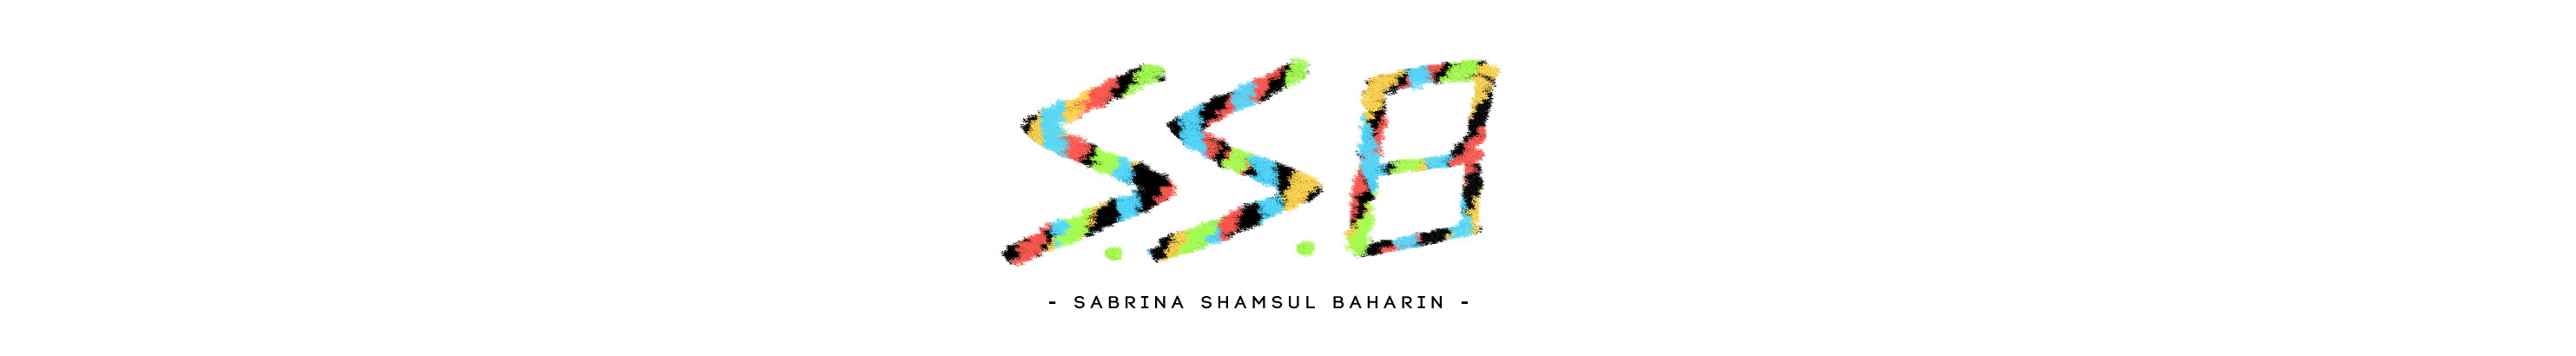 Sabrina Shamsul Baharin's profile banner